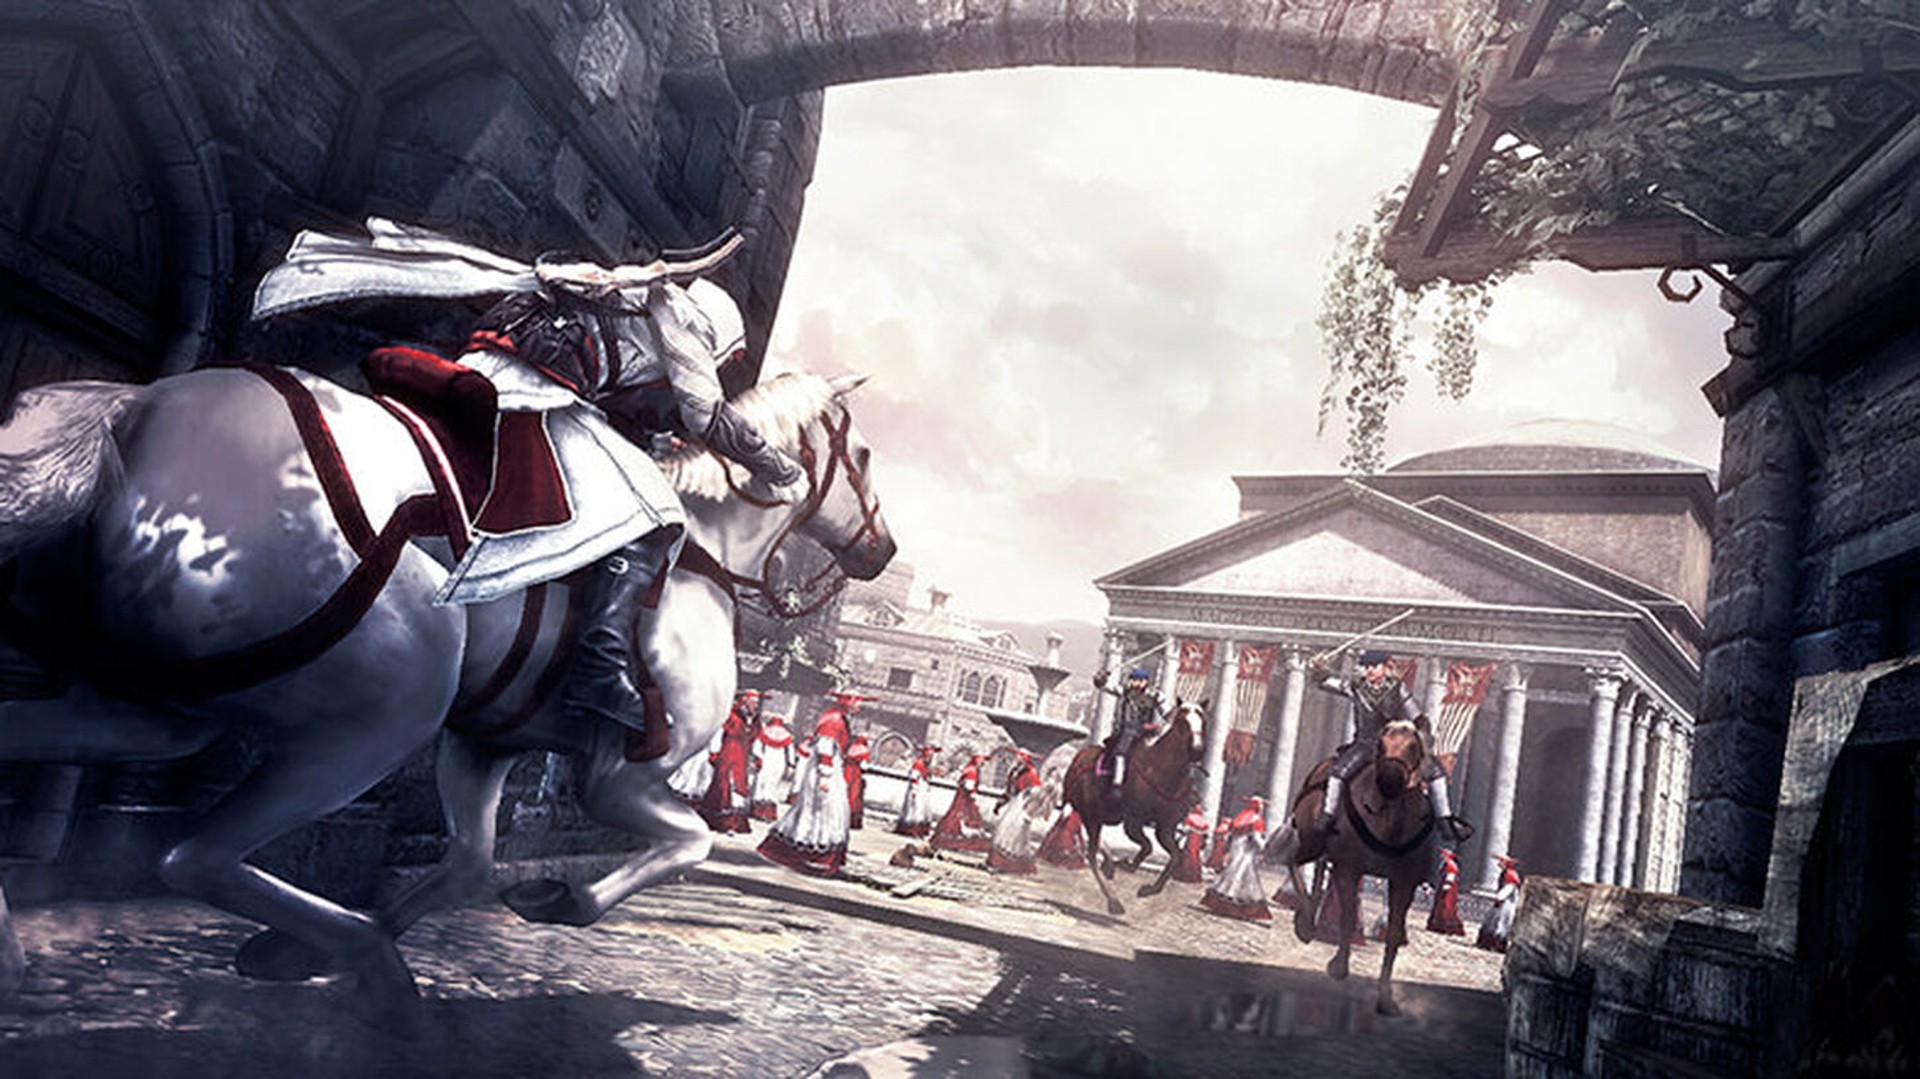 ข่าวลือ Assassin’s Creed ภาคใหม่จะเล่าเรื่องราวอารยธรรม Aztecs